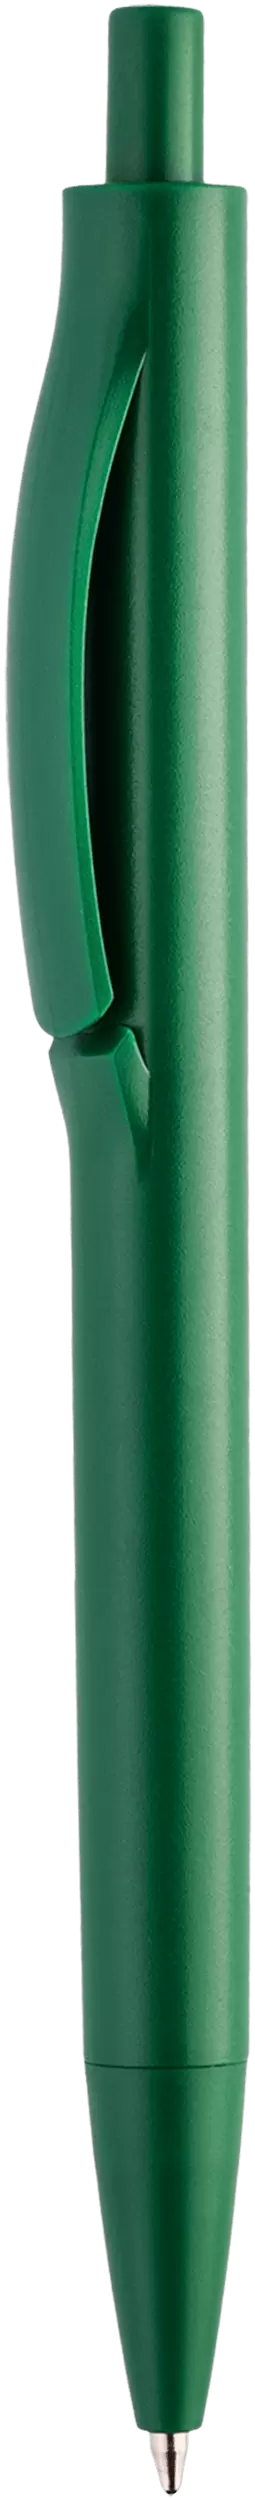 Ручка IGLA COLOR Зеленая 1031.02